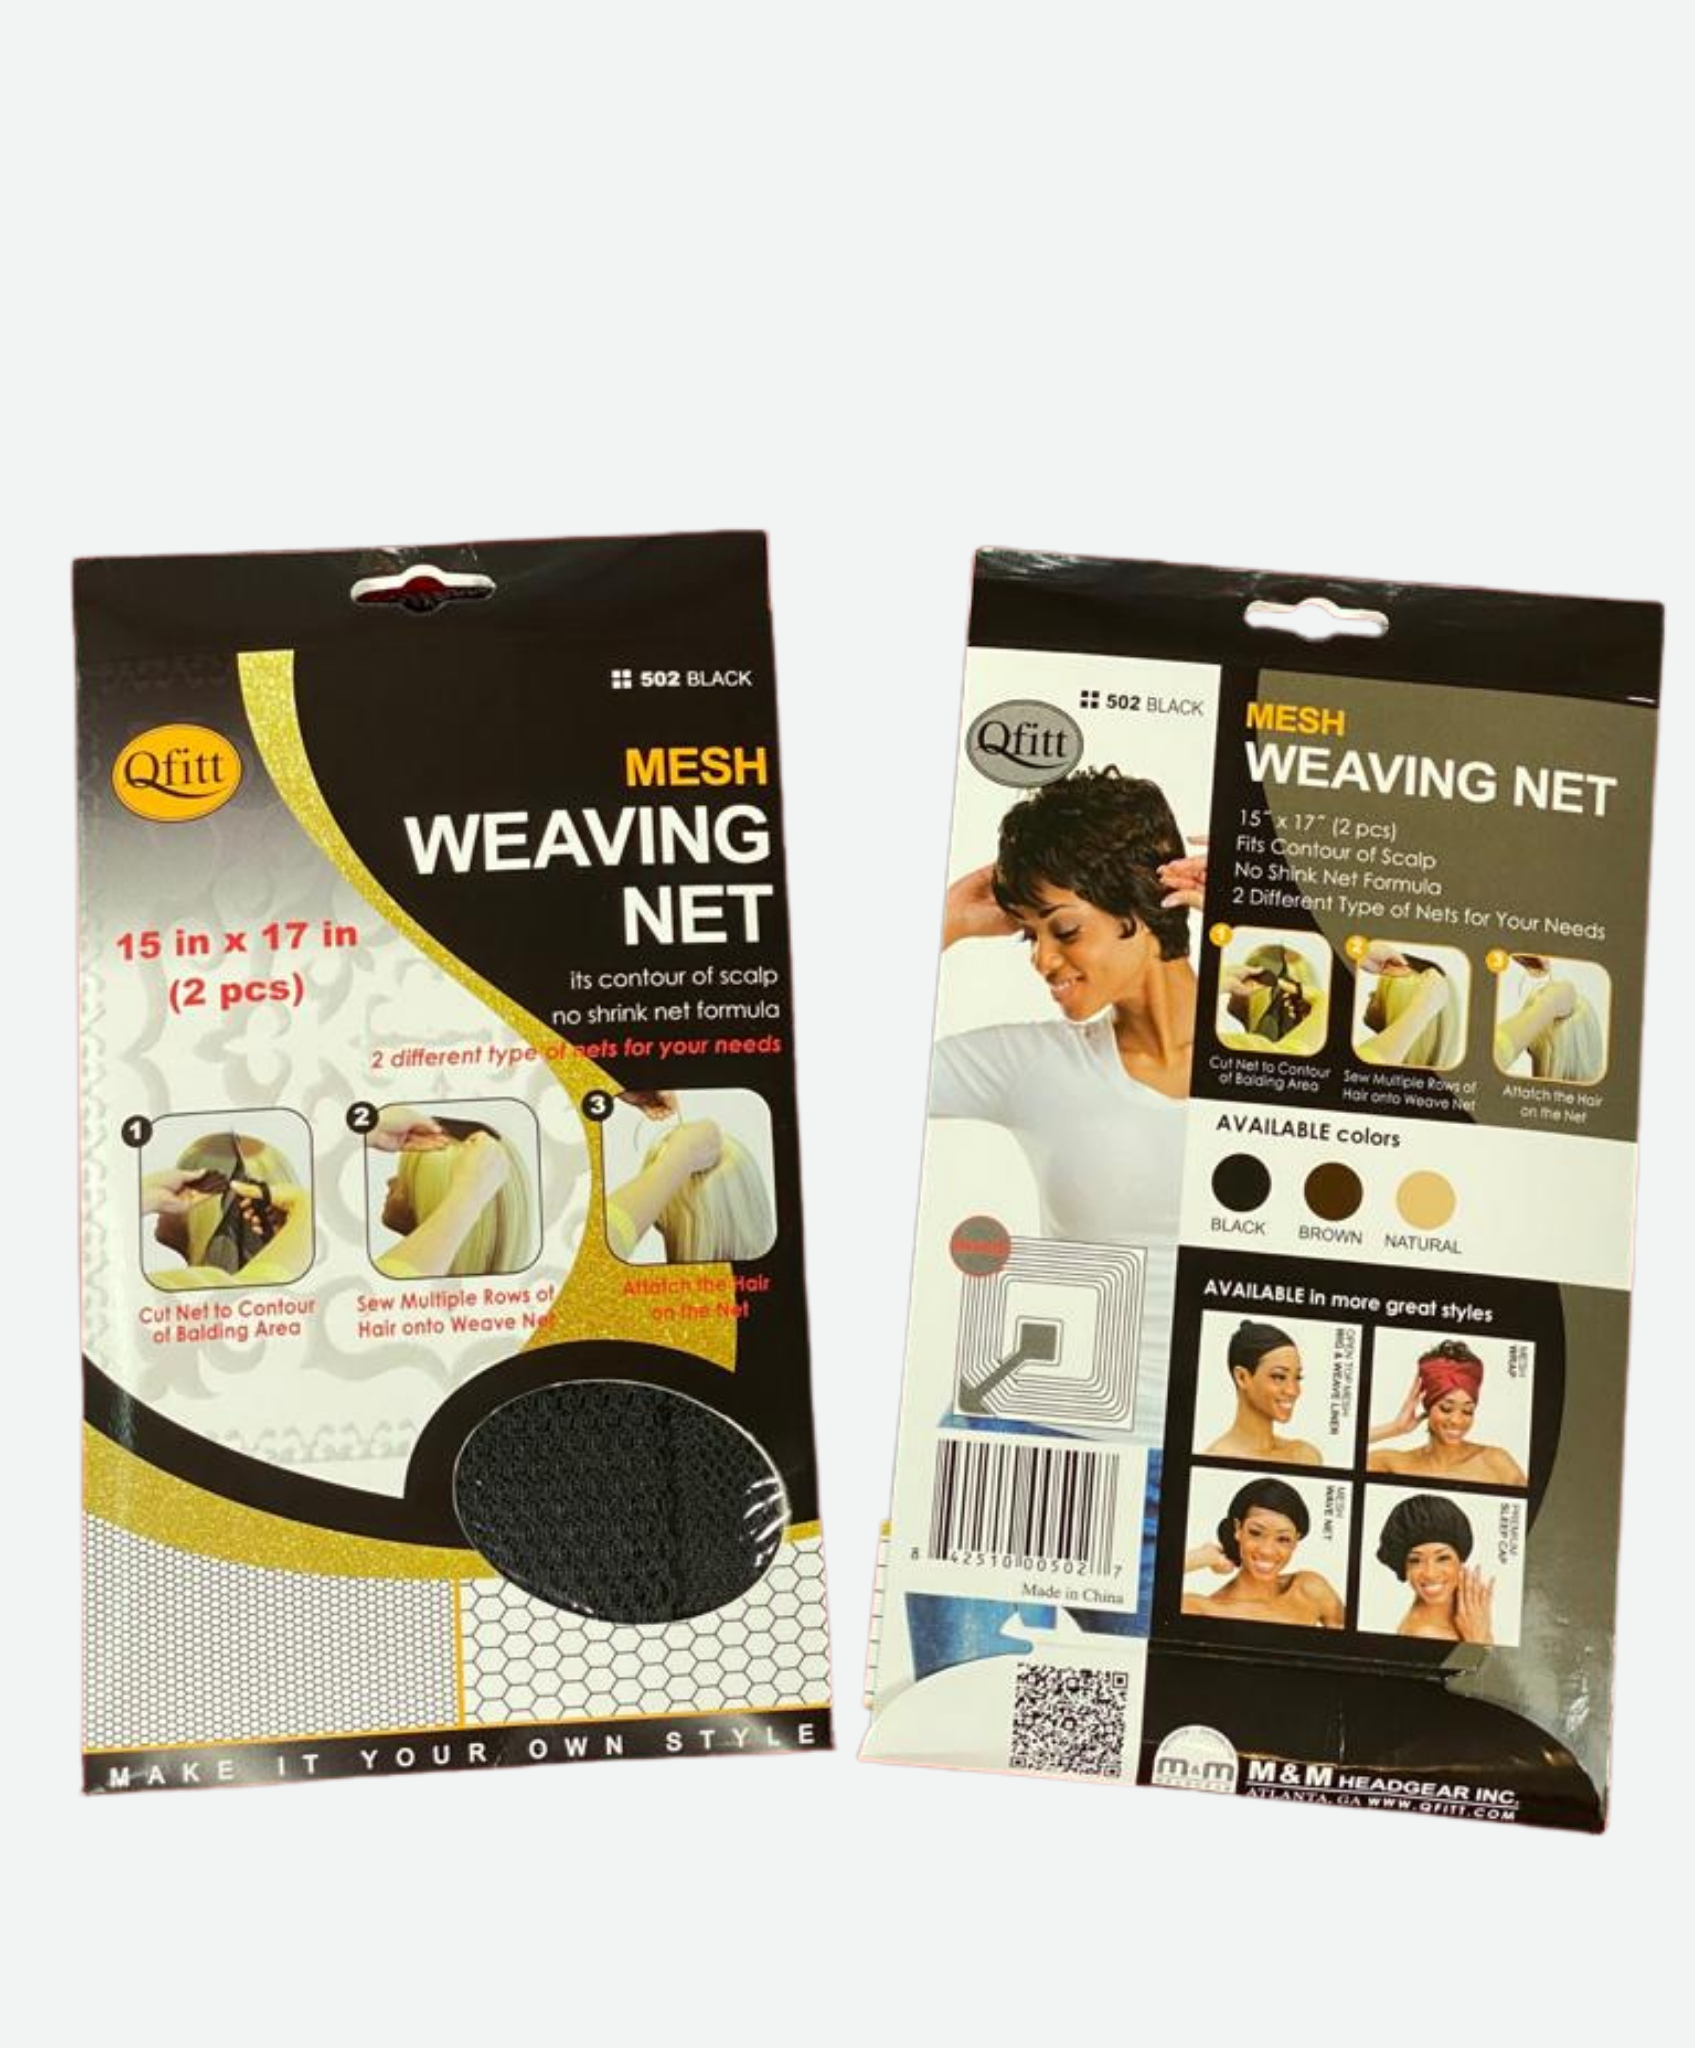 Qfitt Mesh Wig & Weave Cap Closed Top Black Color # 1 for sale online